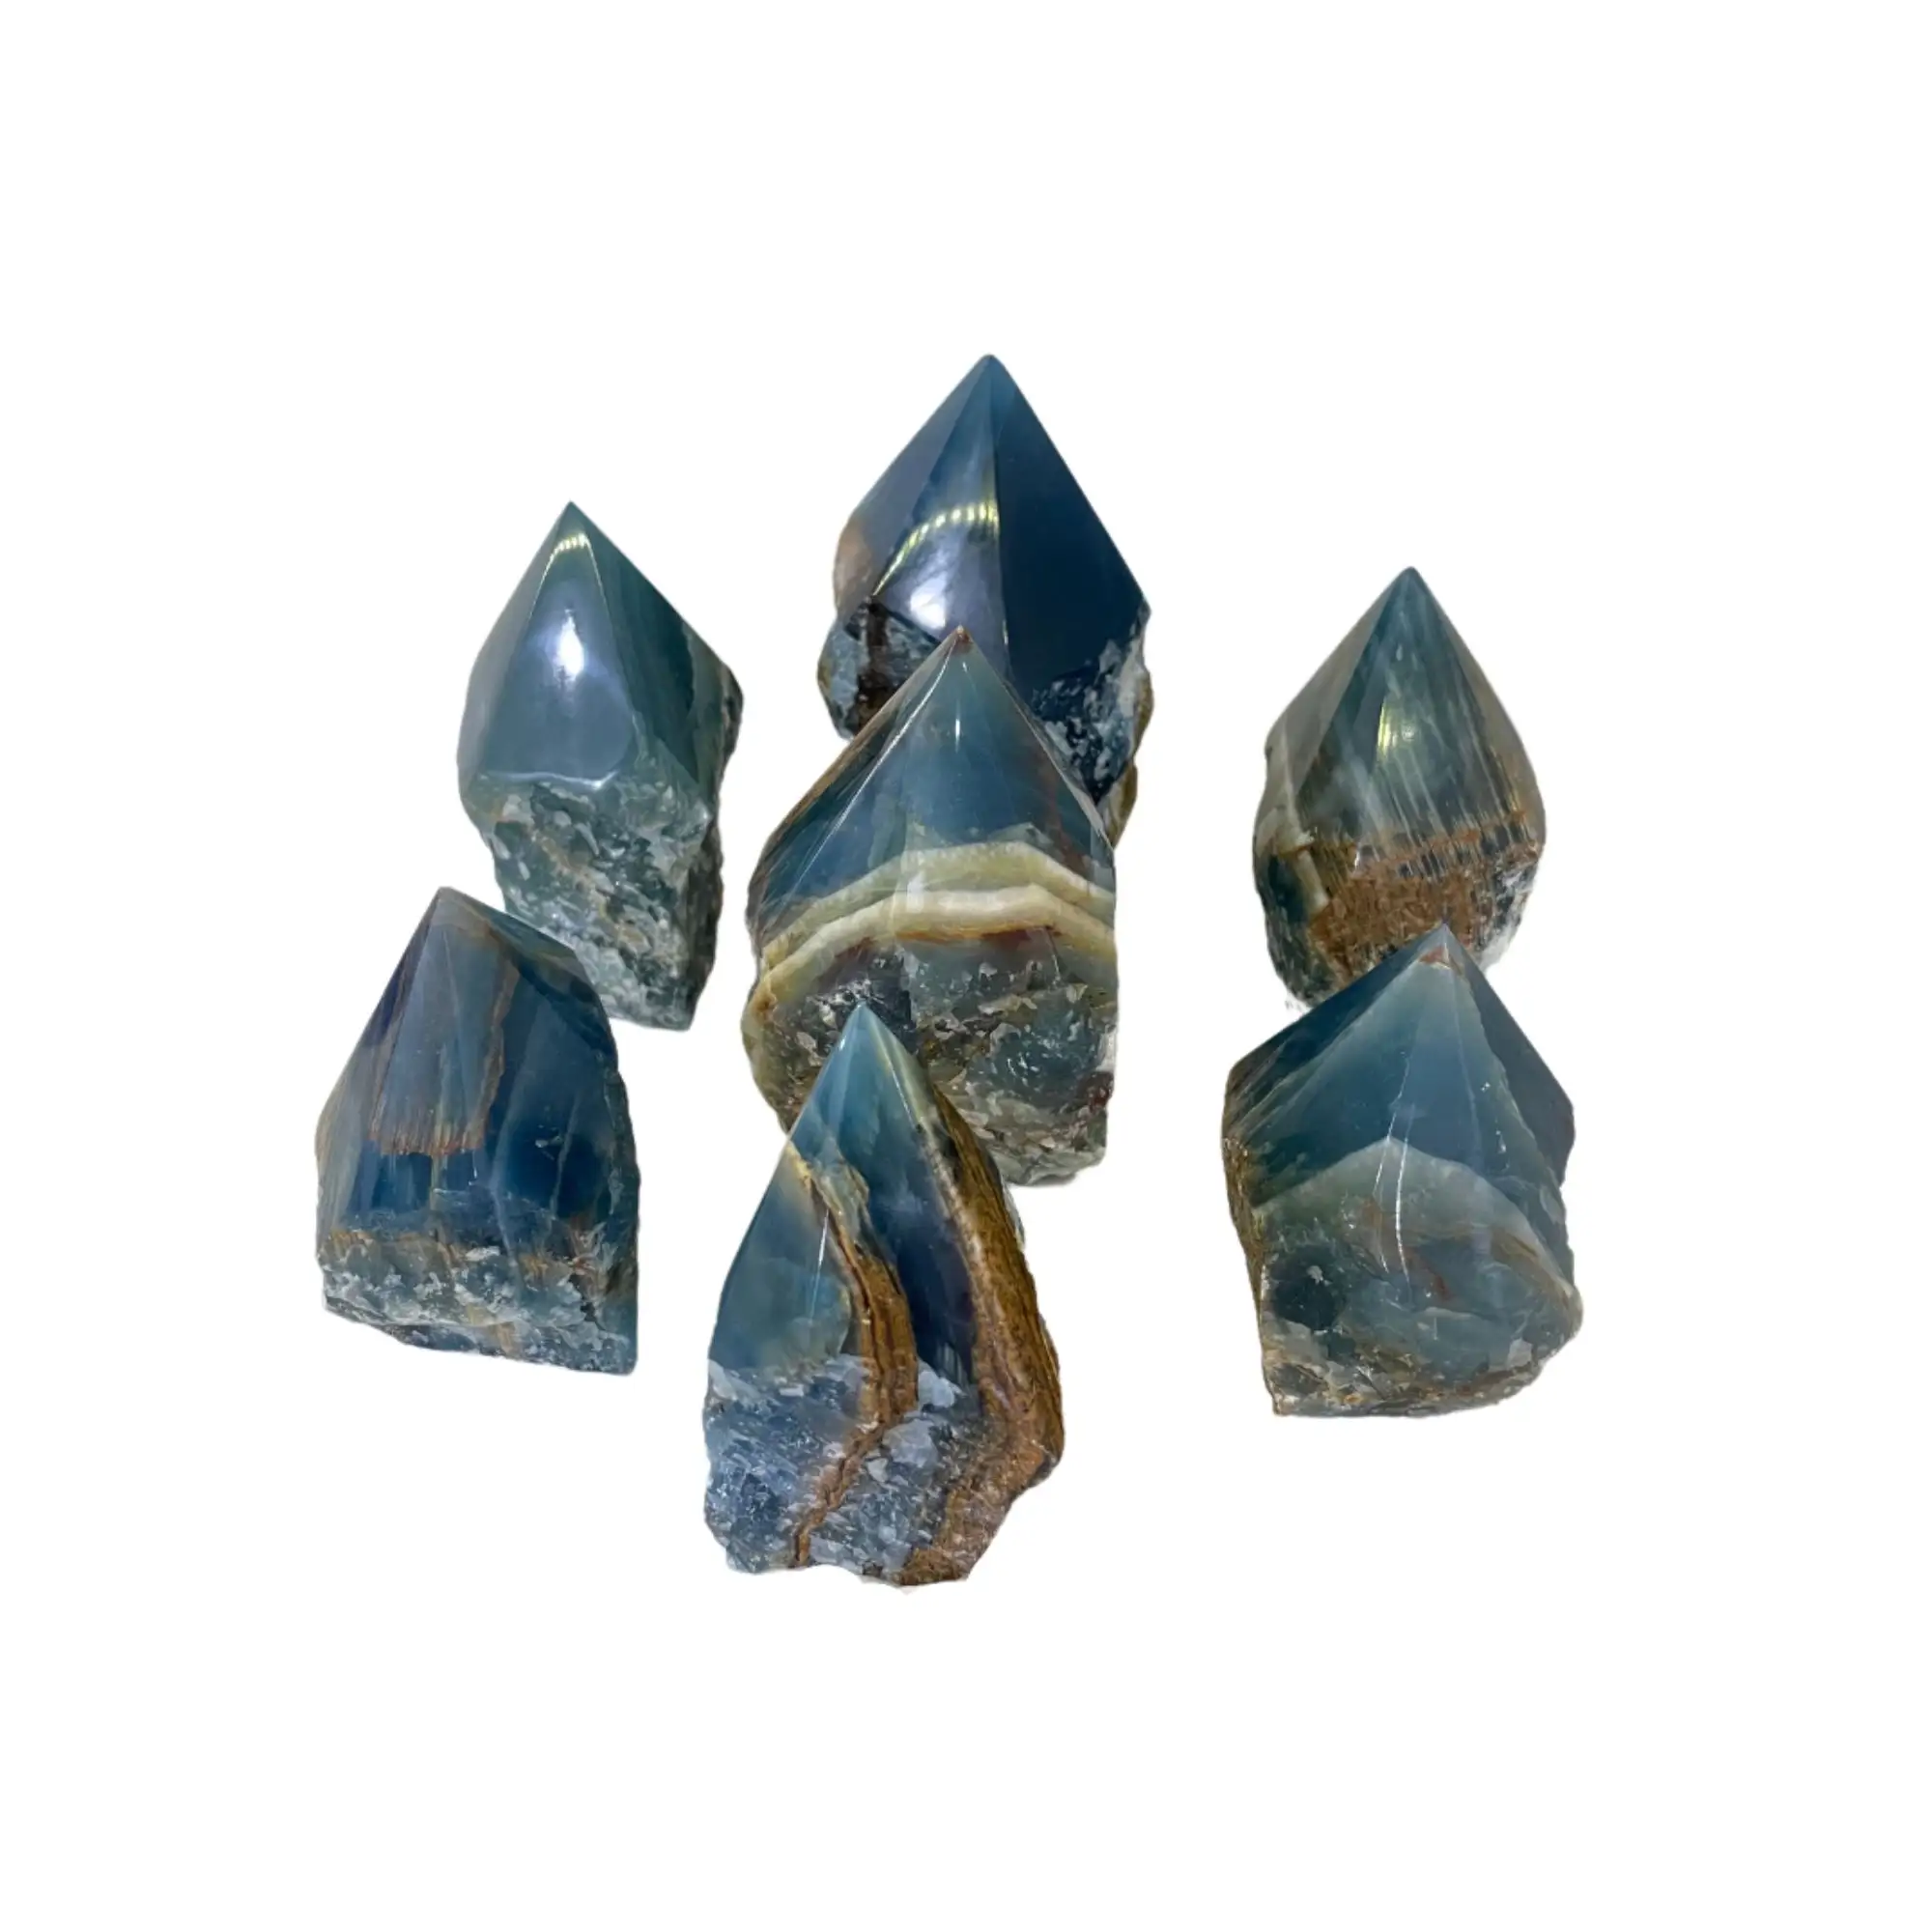 Ponta polida azul da onyx natural da qualidade incrível para a casa e decoração eco rocks brasil